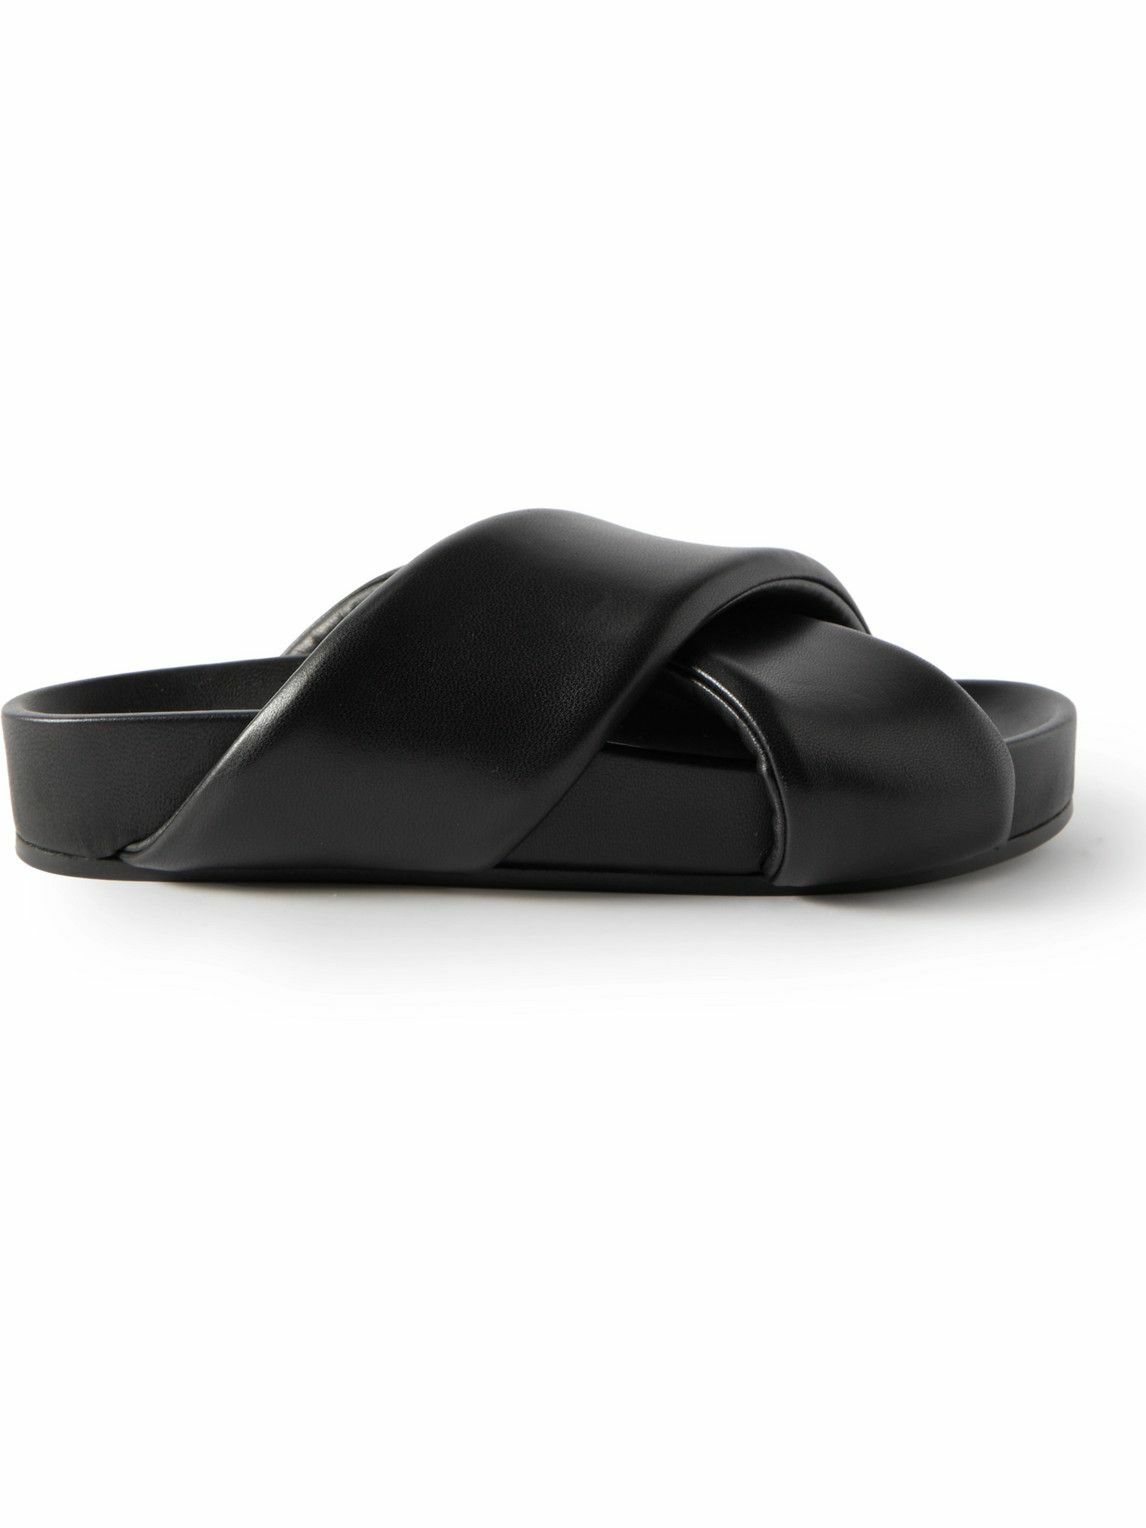 Jil Sander - Leather Sandals - Black Jil Sander